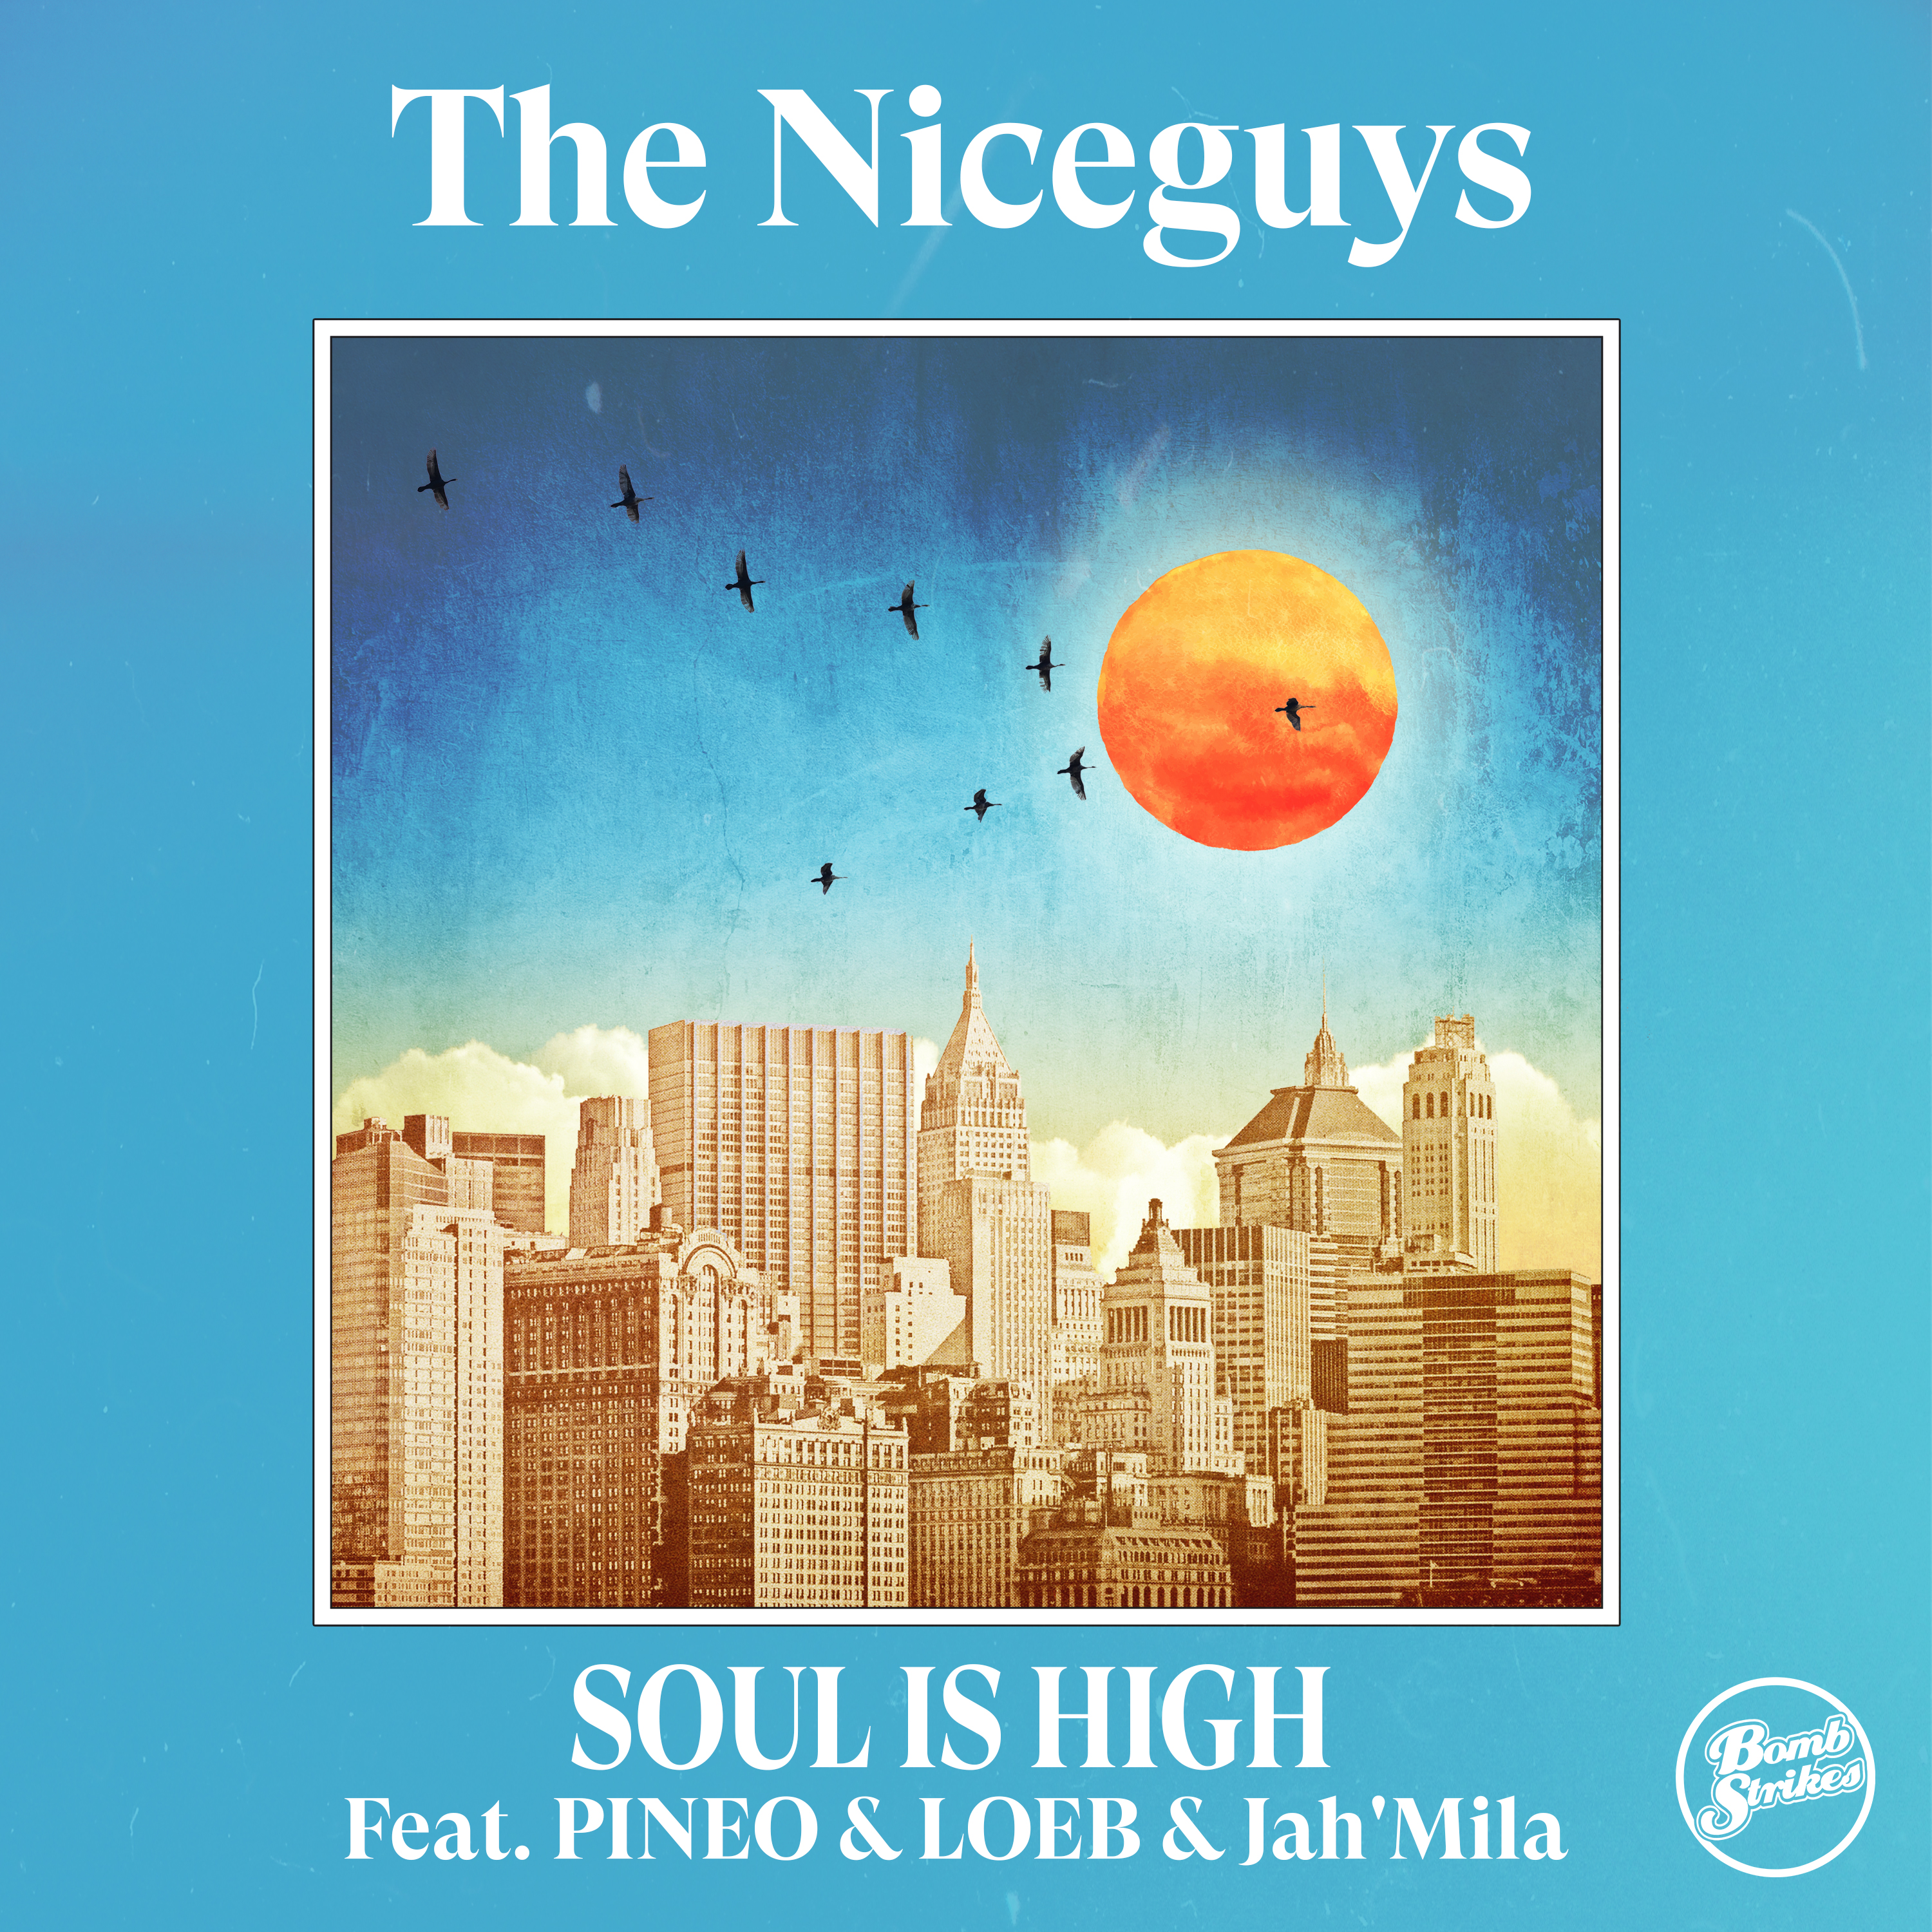 The Niceguys Music